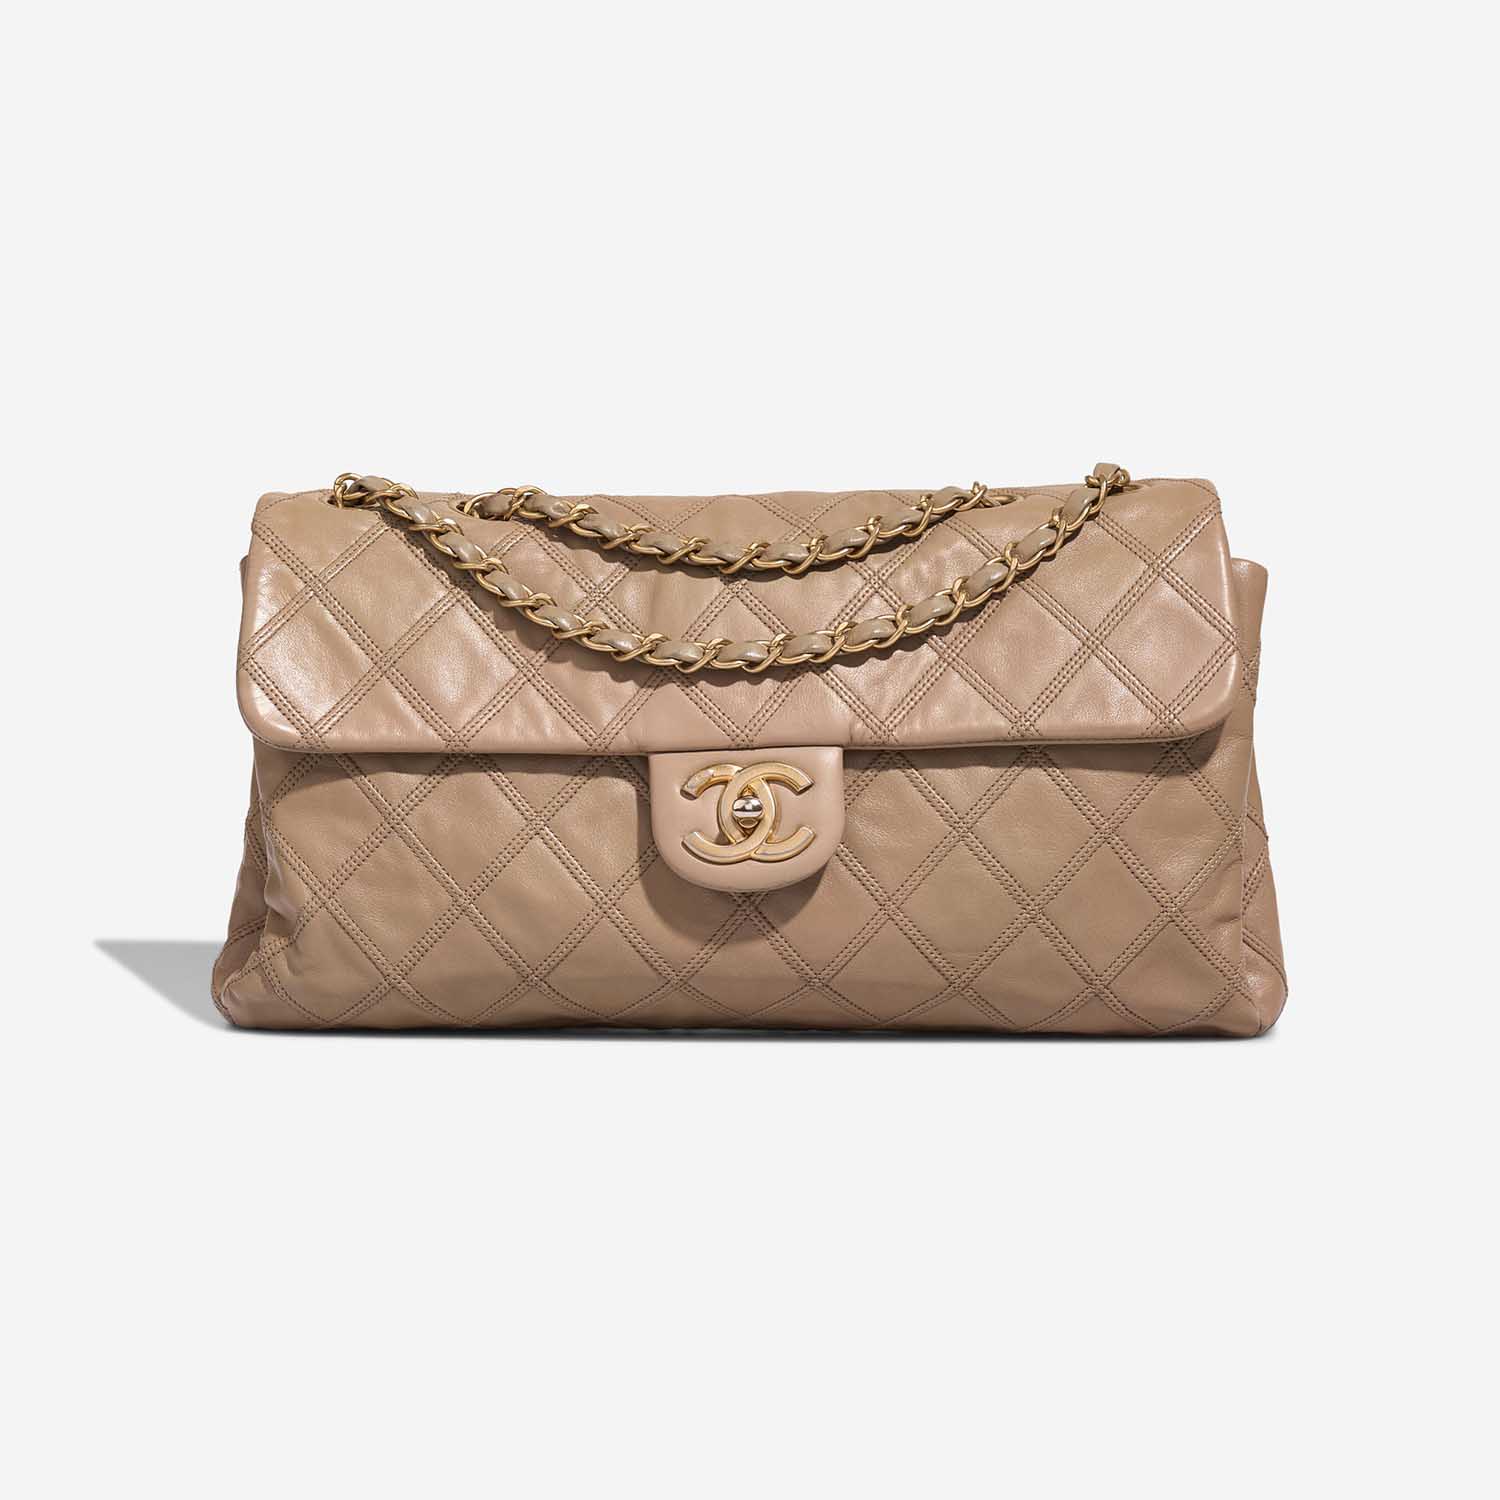 Chanel Timeless Jumbo Beige Front S | Verkaufen Sie Ihre Designer-Tasche auf Saclab.com